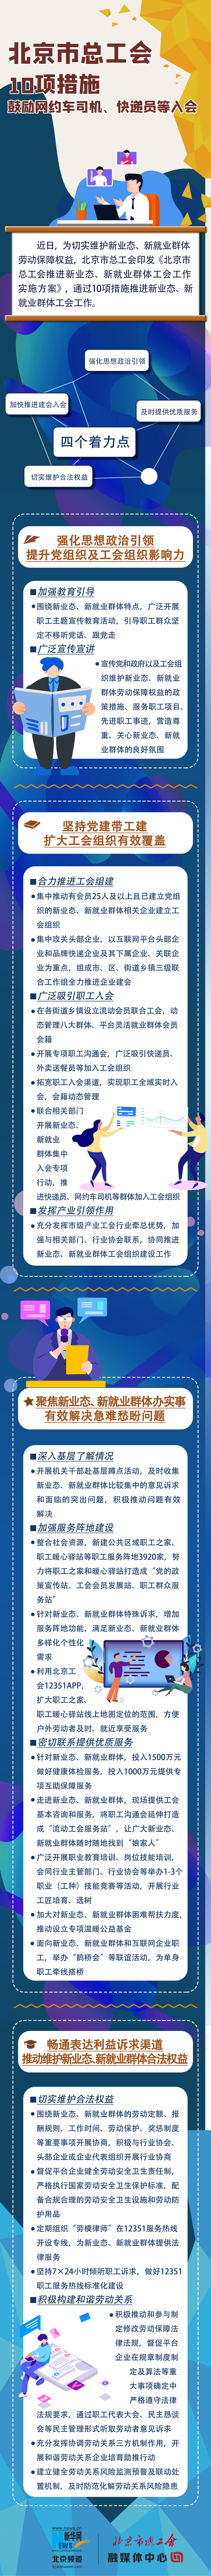 北京市总工会推出10大措施 鼓励网约车司机、快递员等入会